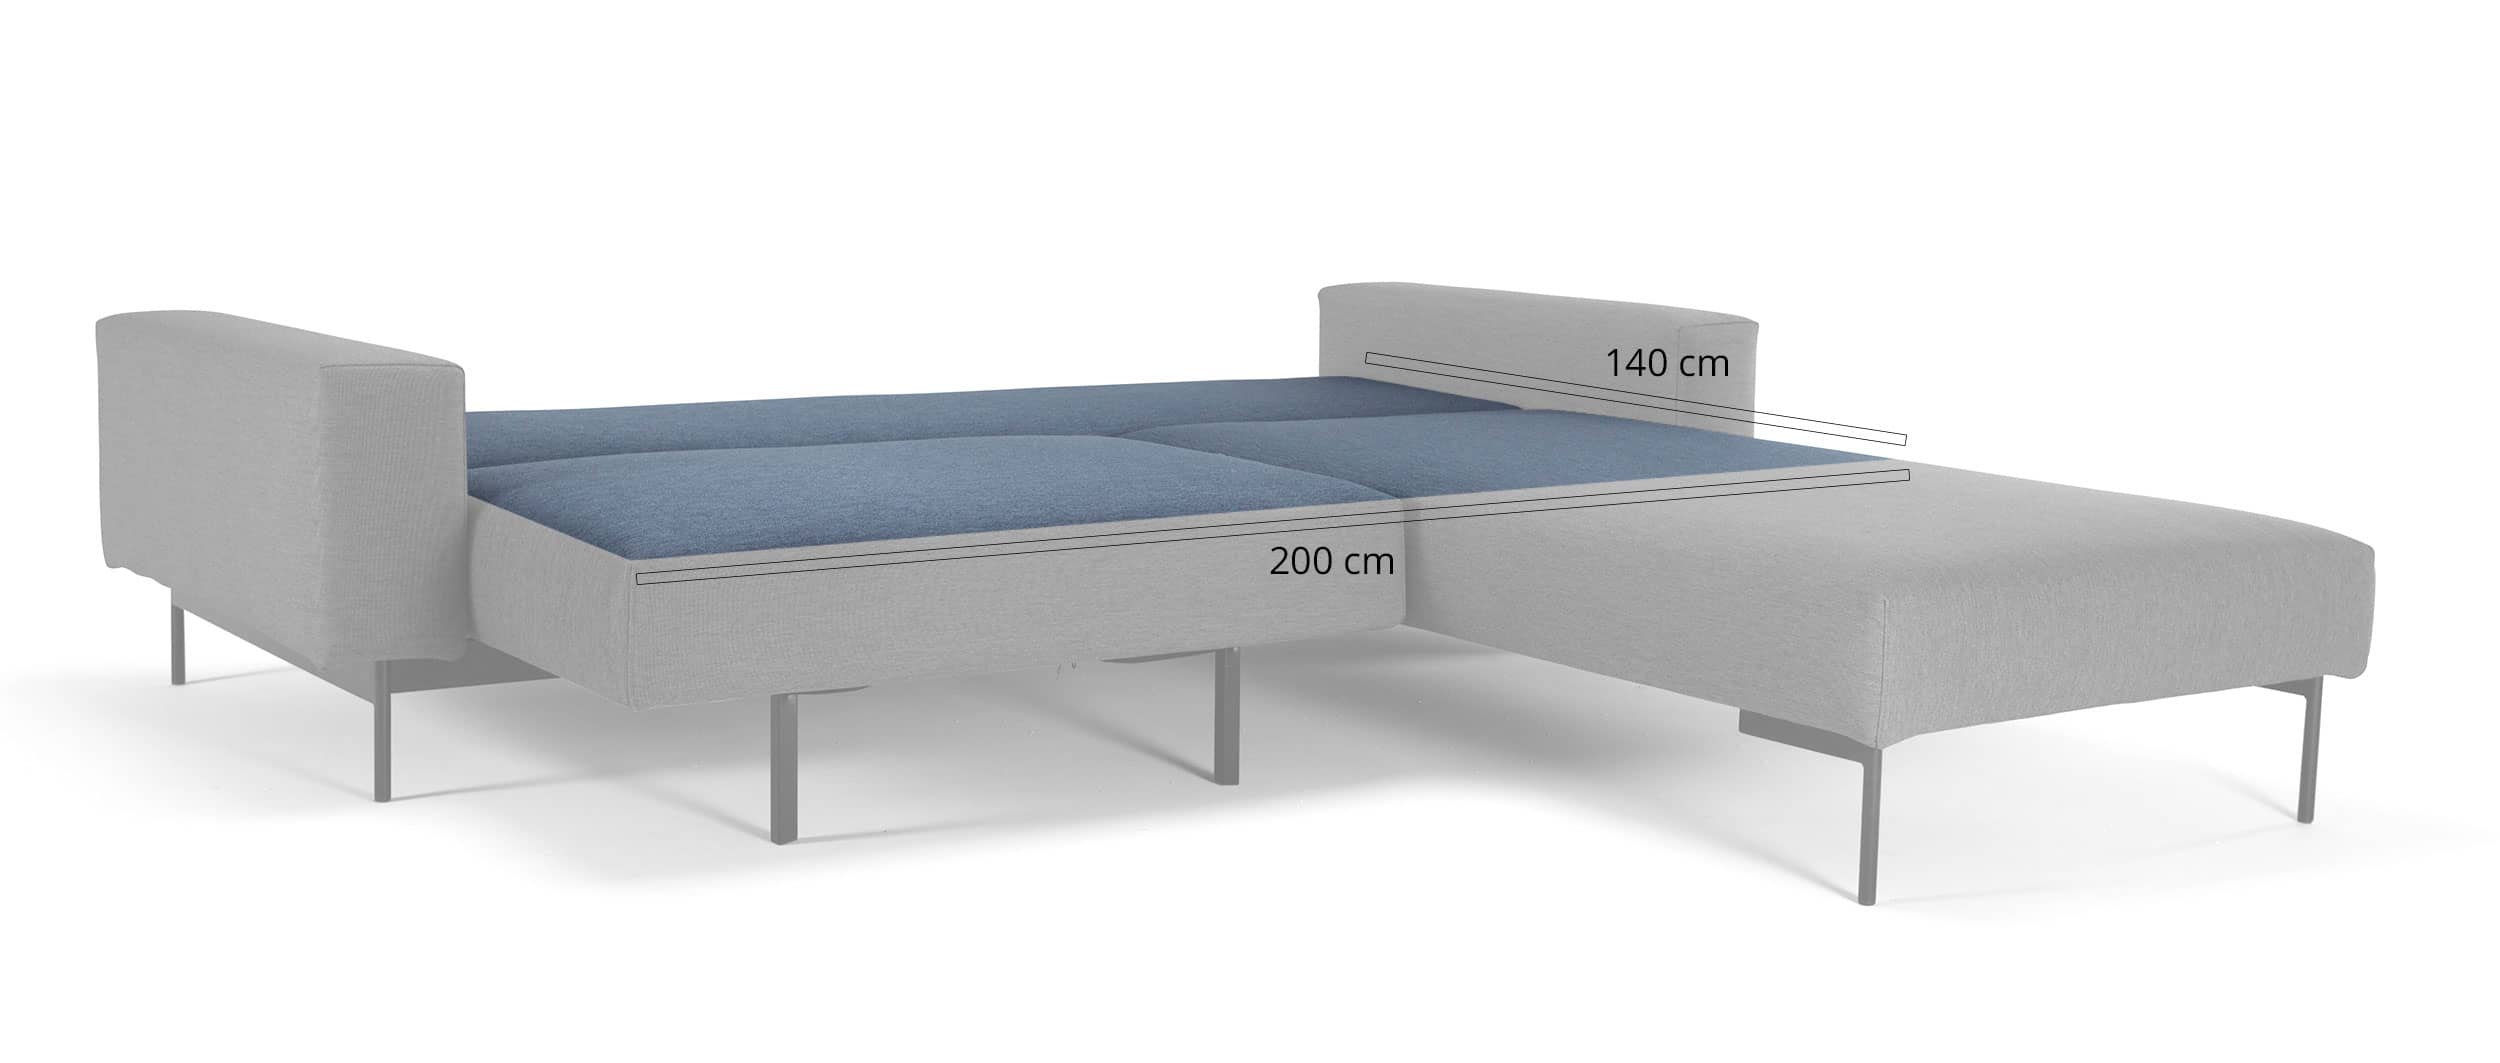 Ecksofa mit Schlaffunktion, Gästebett mit Liegefläche von 140x200 cm, Klappsofa für 2 Personen, breite Armlehnen